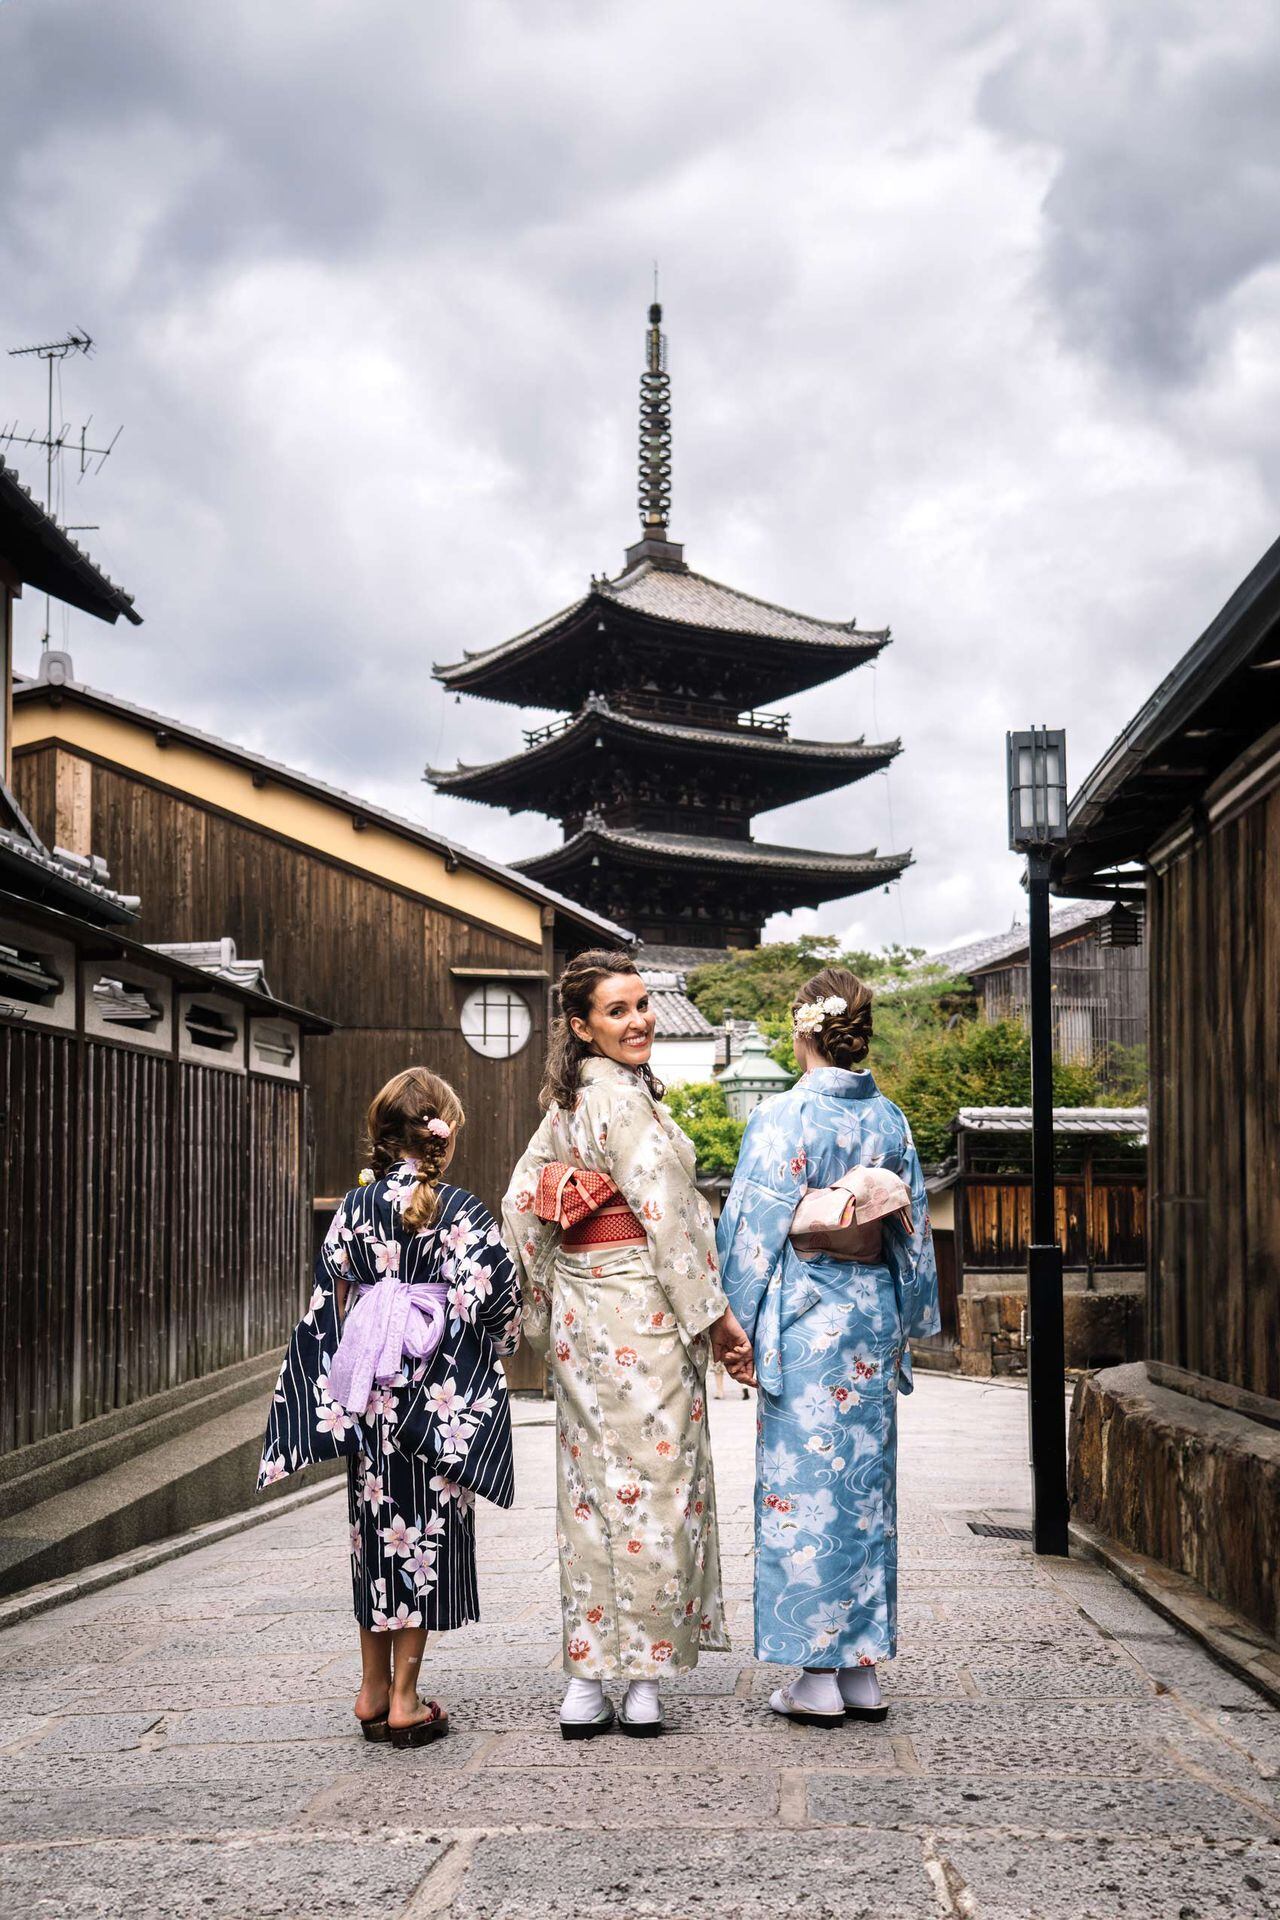 Los turistas al visitar el país pueden conocer las tradiciones japonesas.